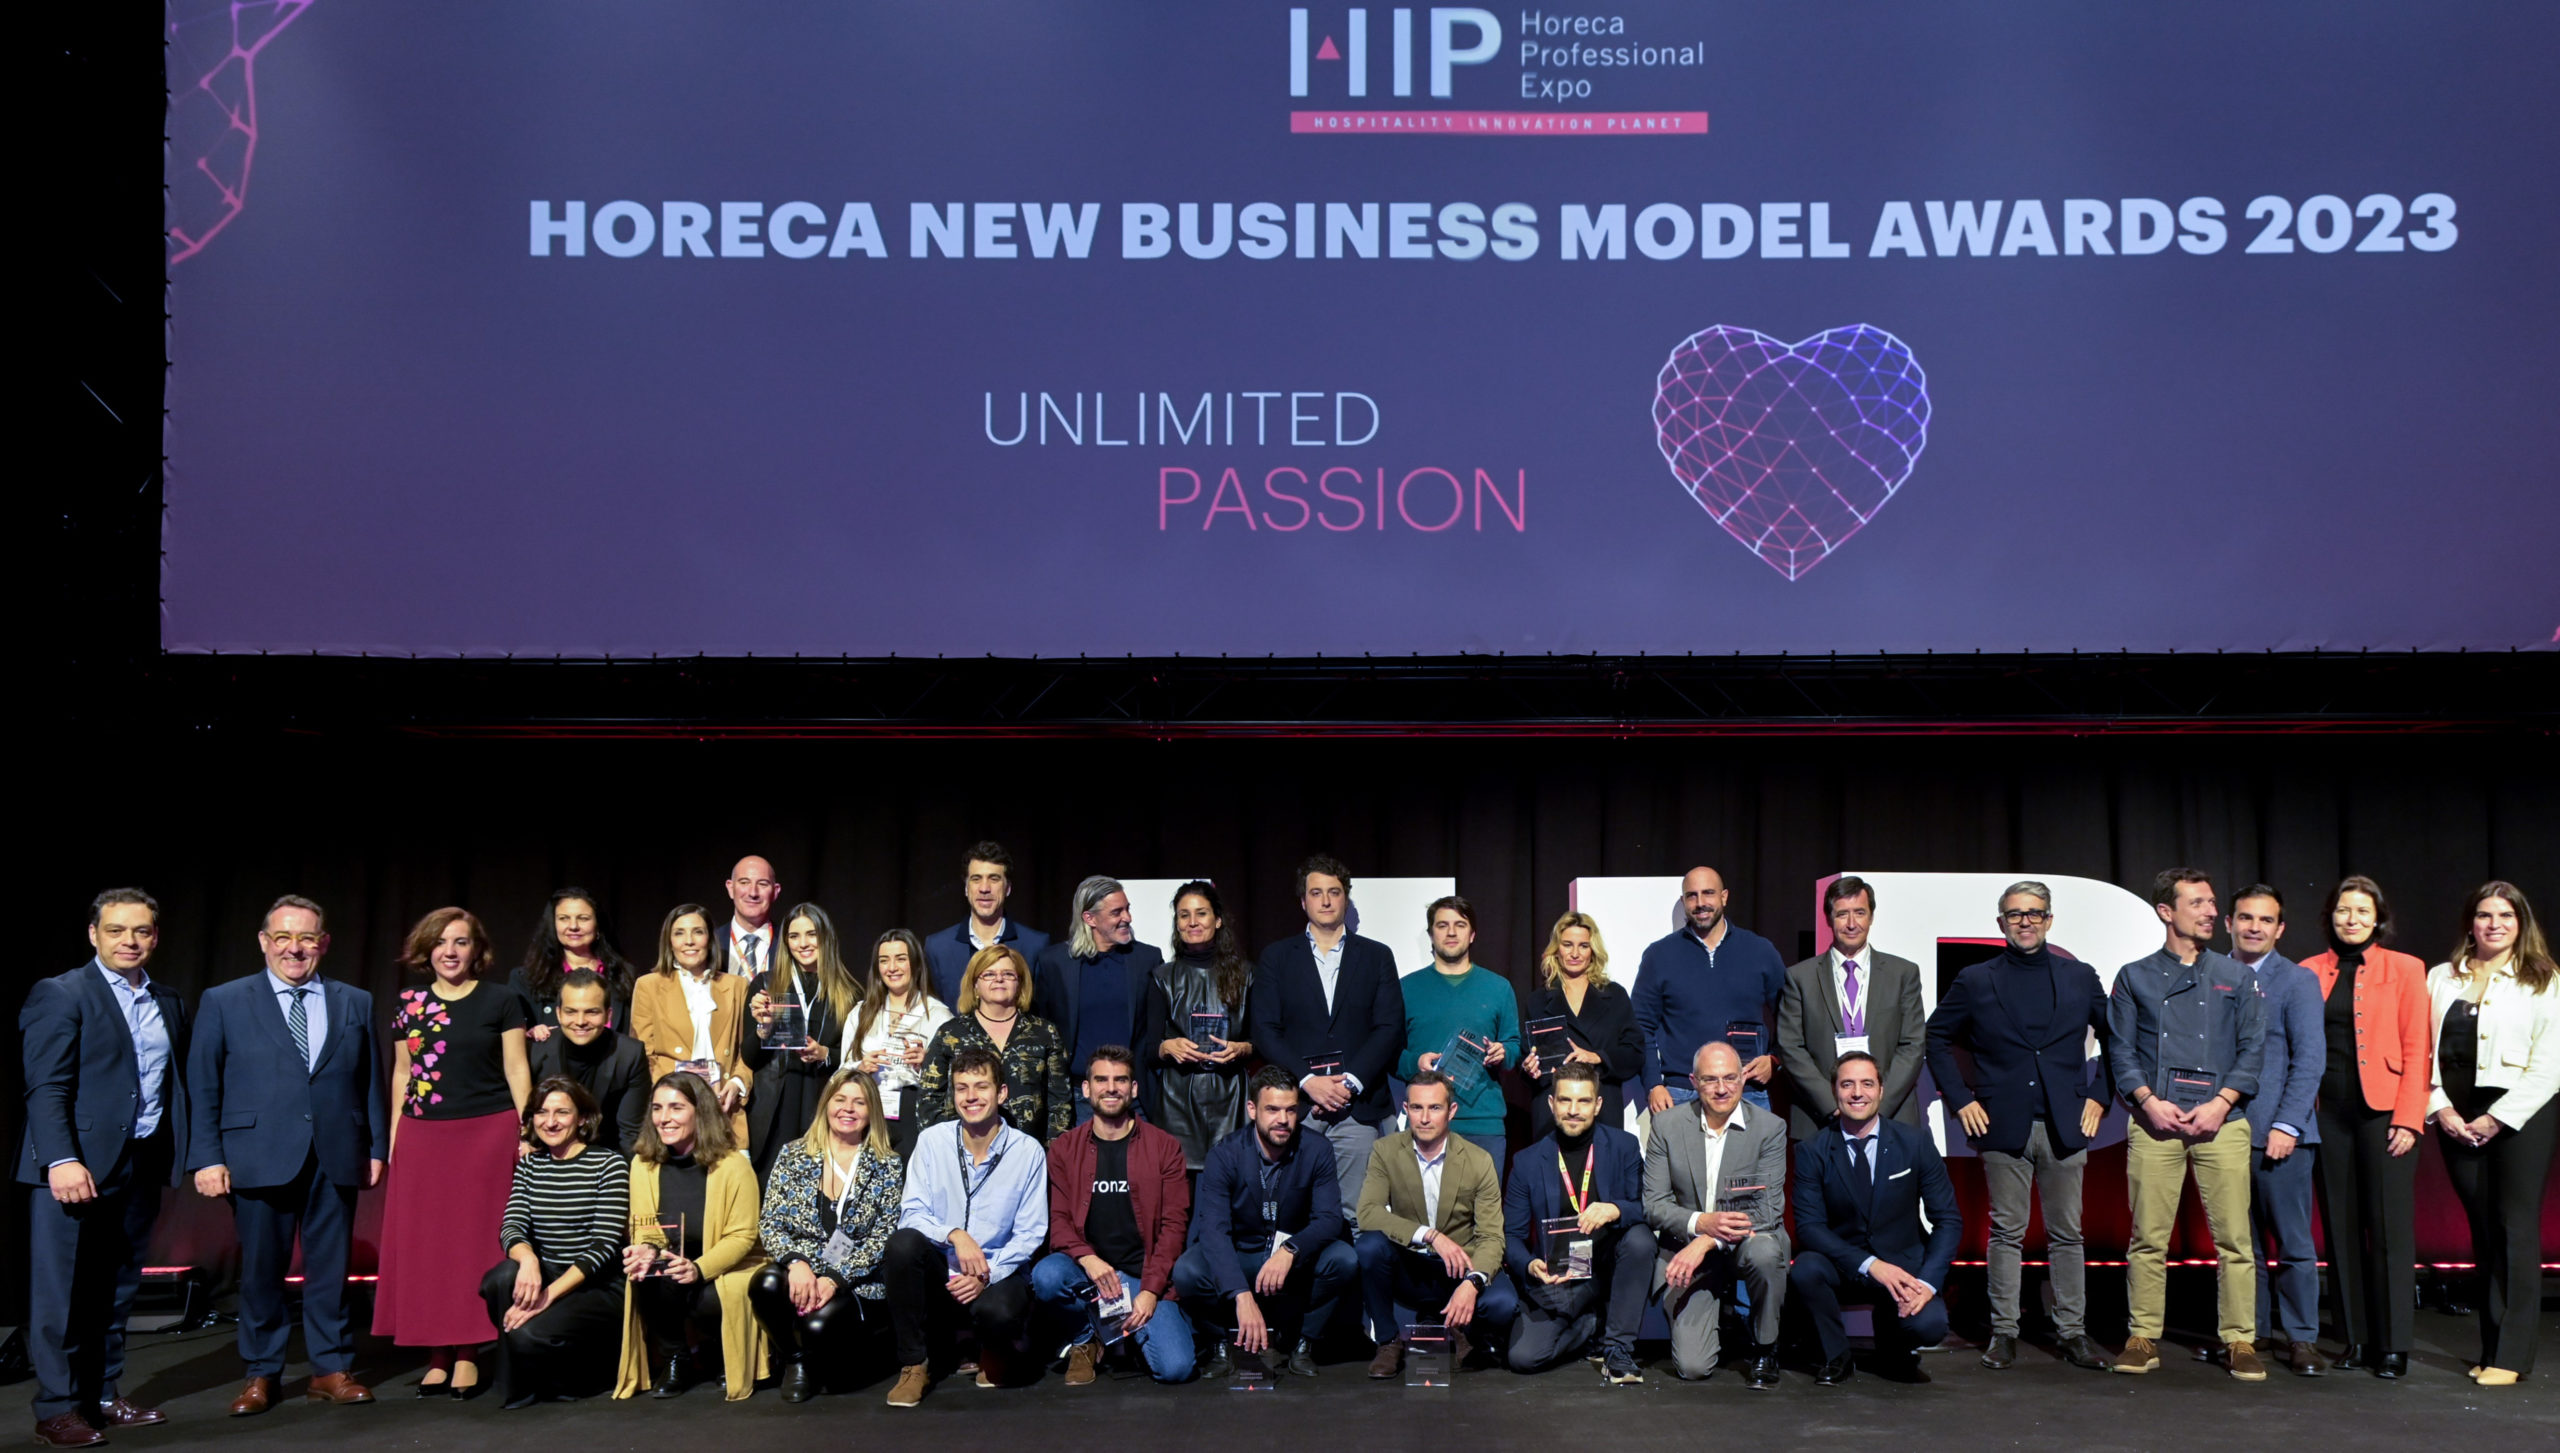 La industria Horeca celebrará sus premios anuales en Madrid el próximo mes de febrero